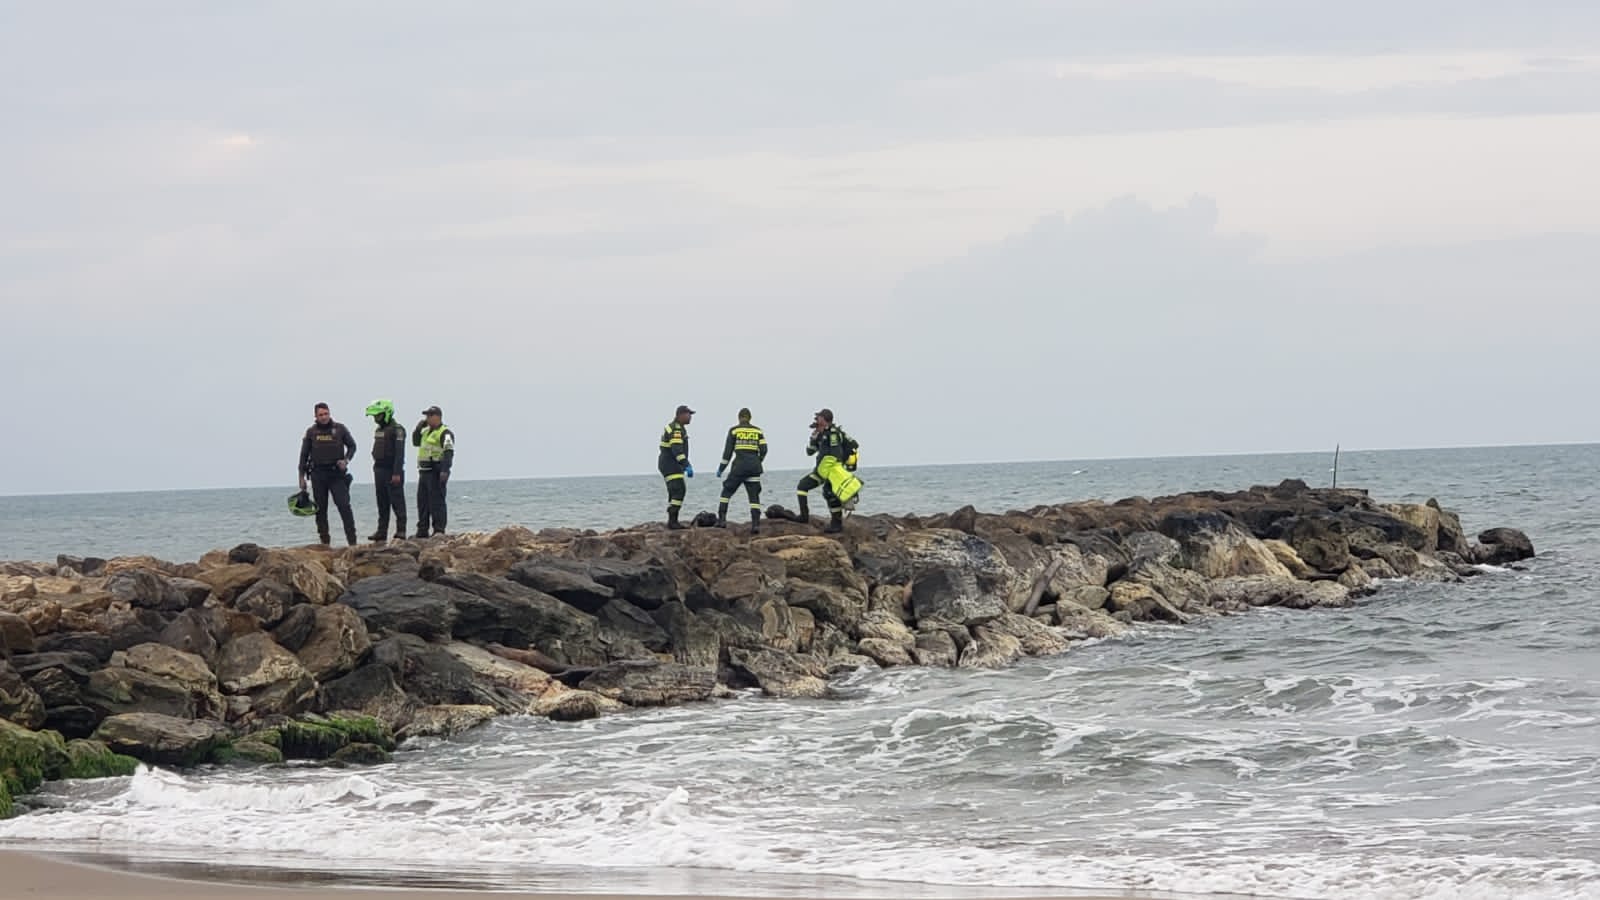 Hallado el cuerpo de niño desaparecido en las playas de Miramar